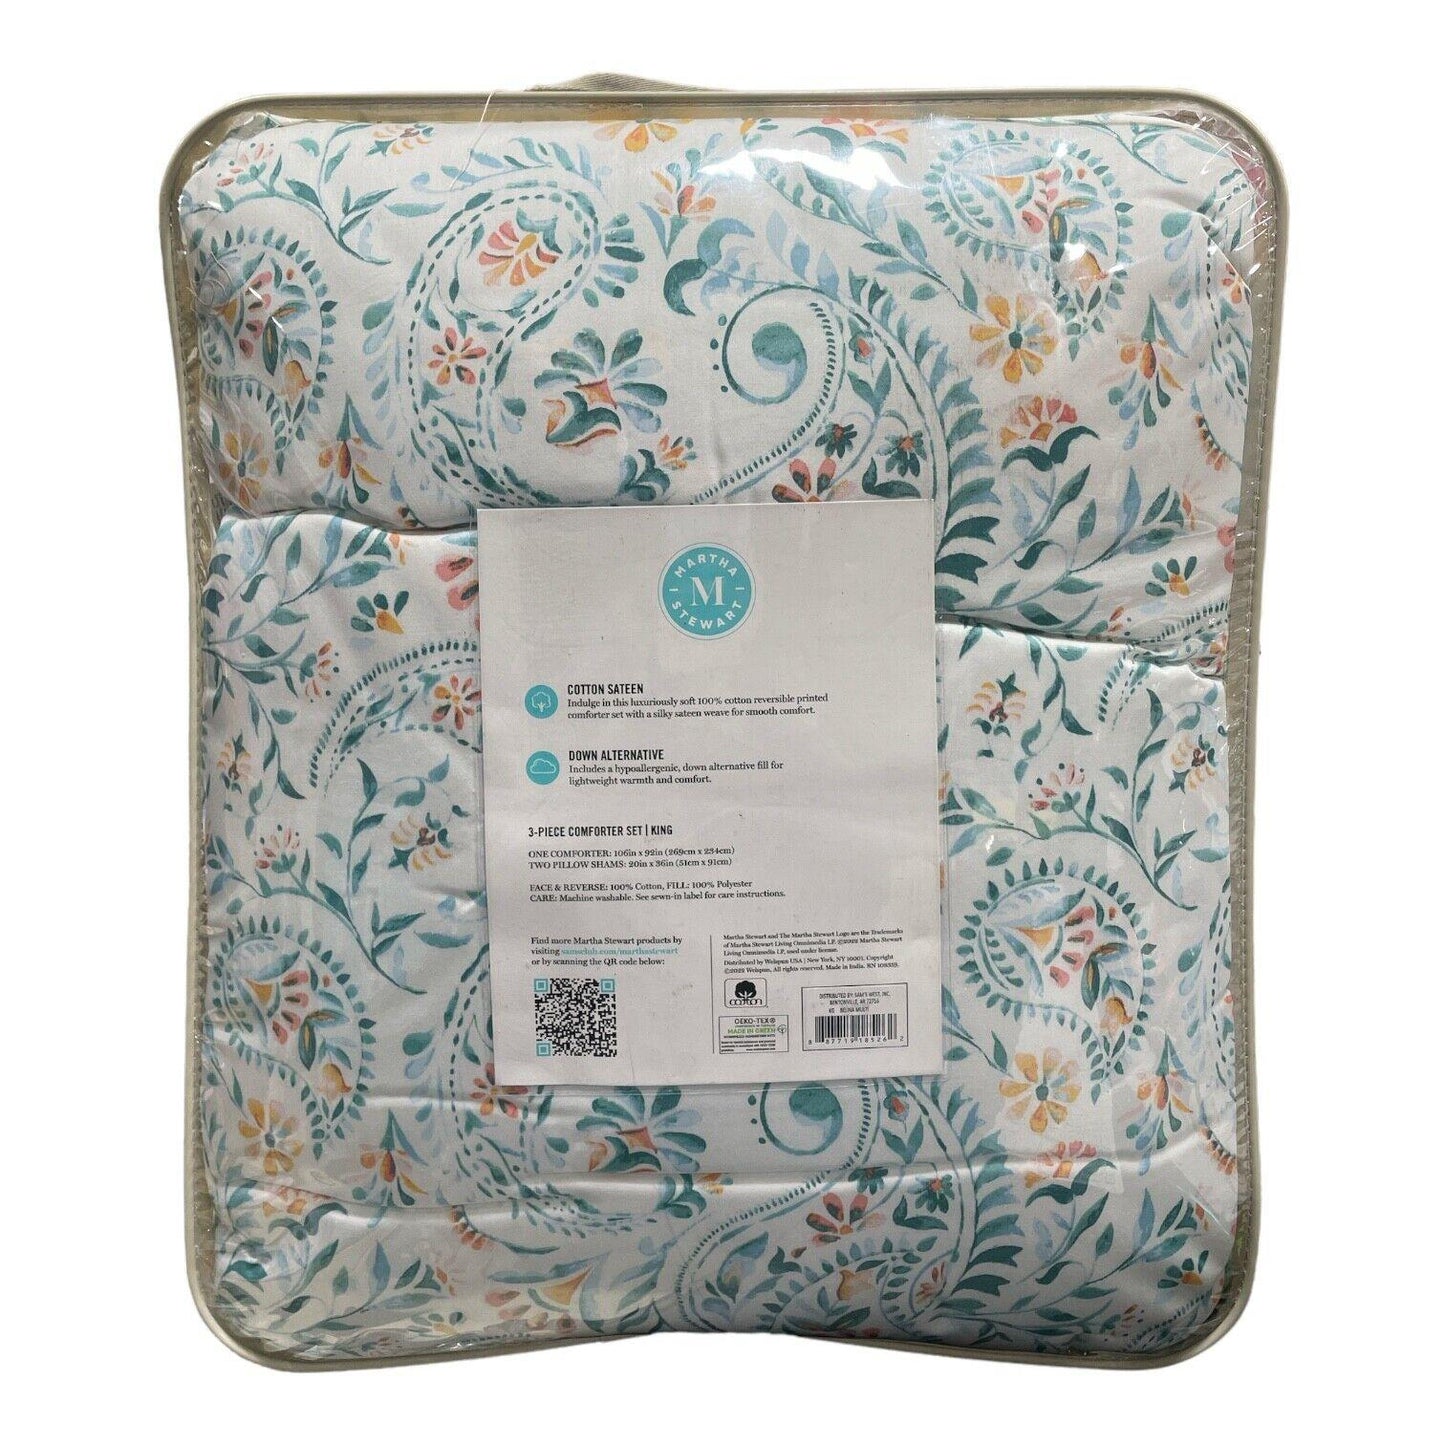 Martha Stewart 3 Piece 100% Cotton Sateen Comforter Set, Full/Queen (Belina)